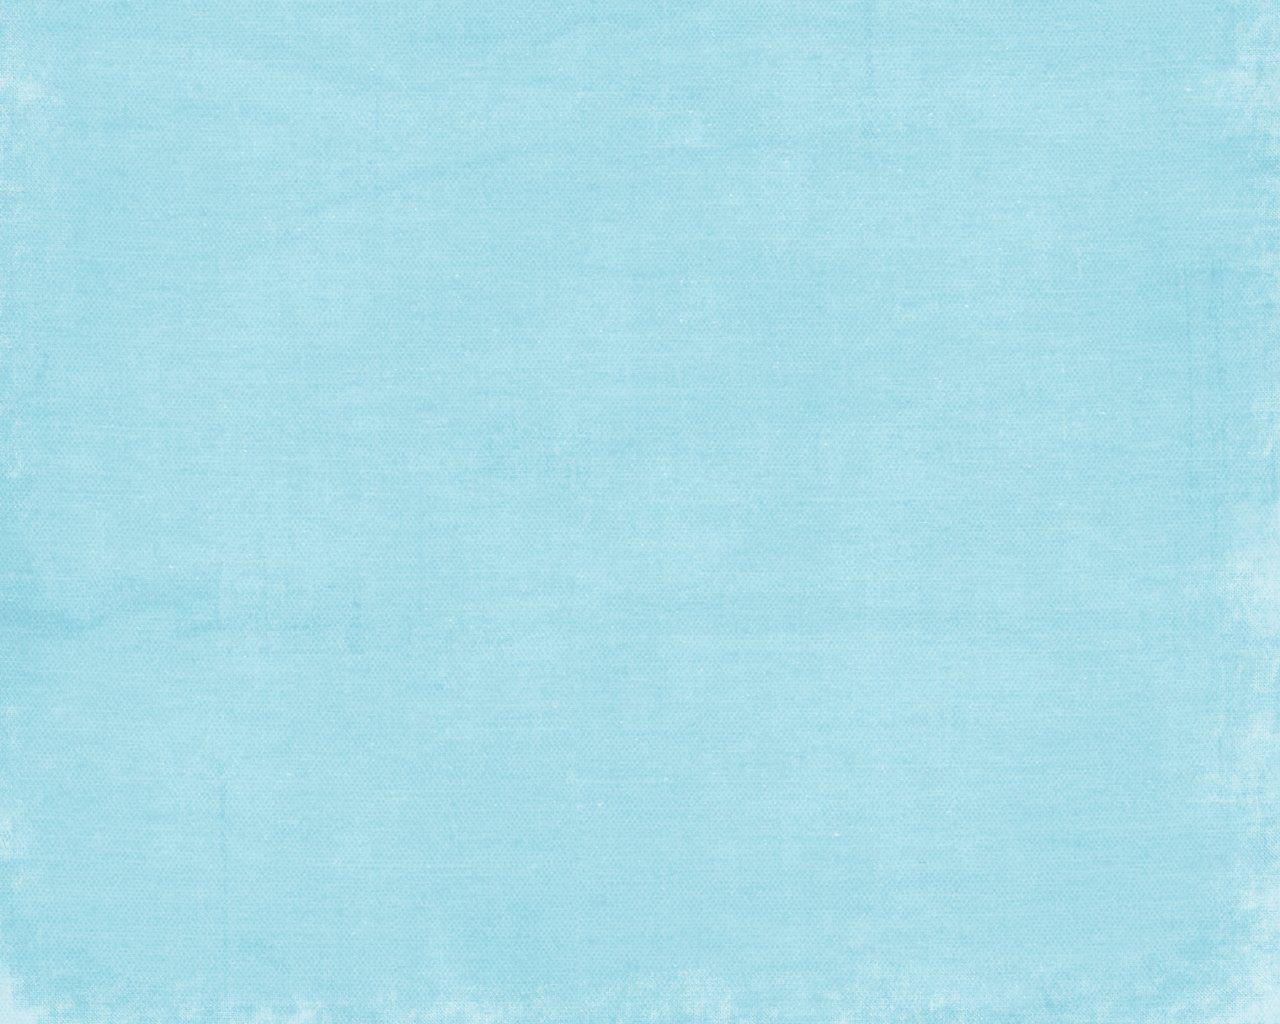 Gyrosigma light blue background 20288